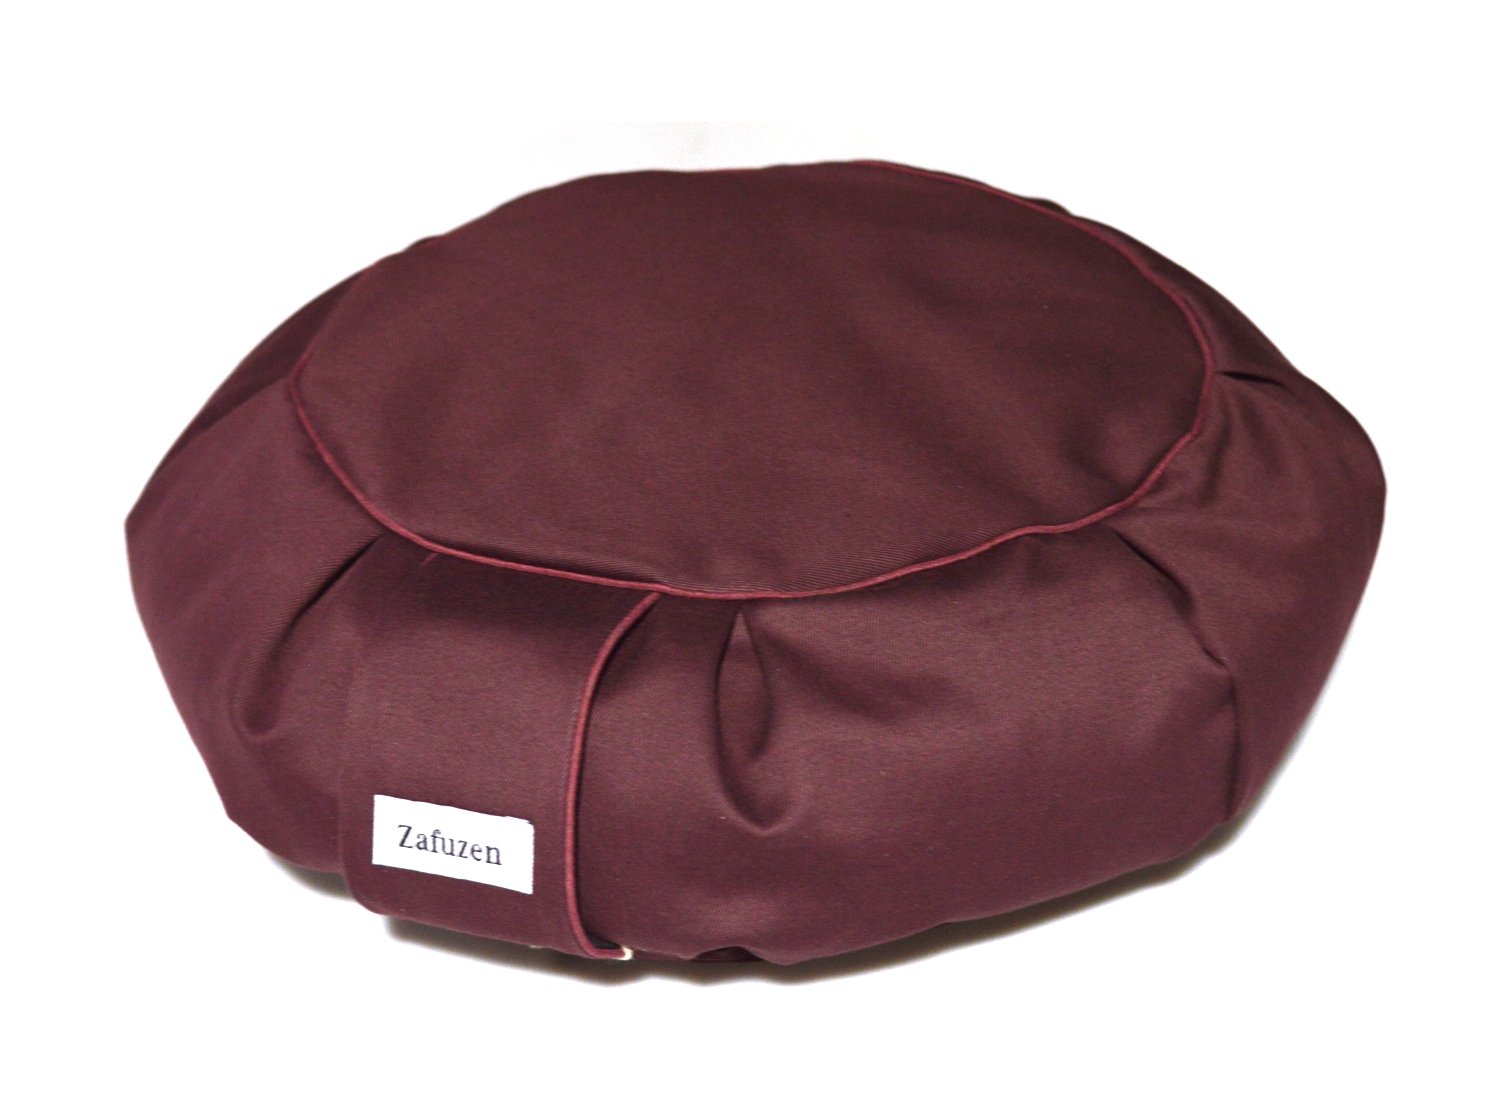 Купить Подушка для медитации Дзафу бордовая Zafuzen в интернет-магазине #store#